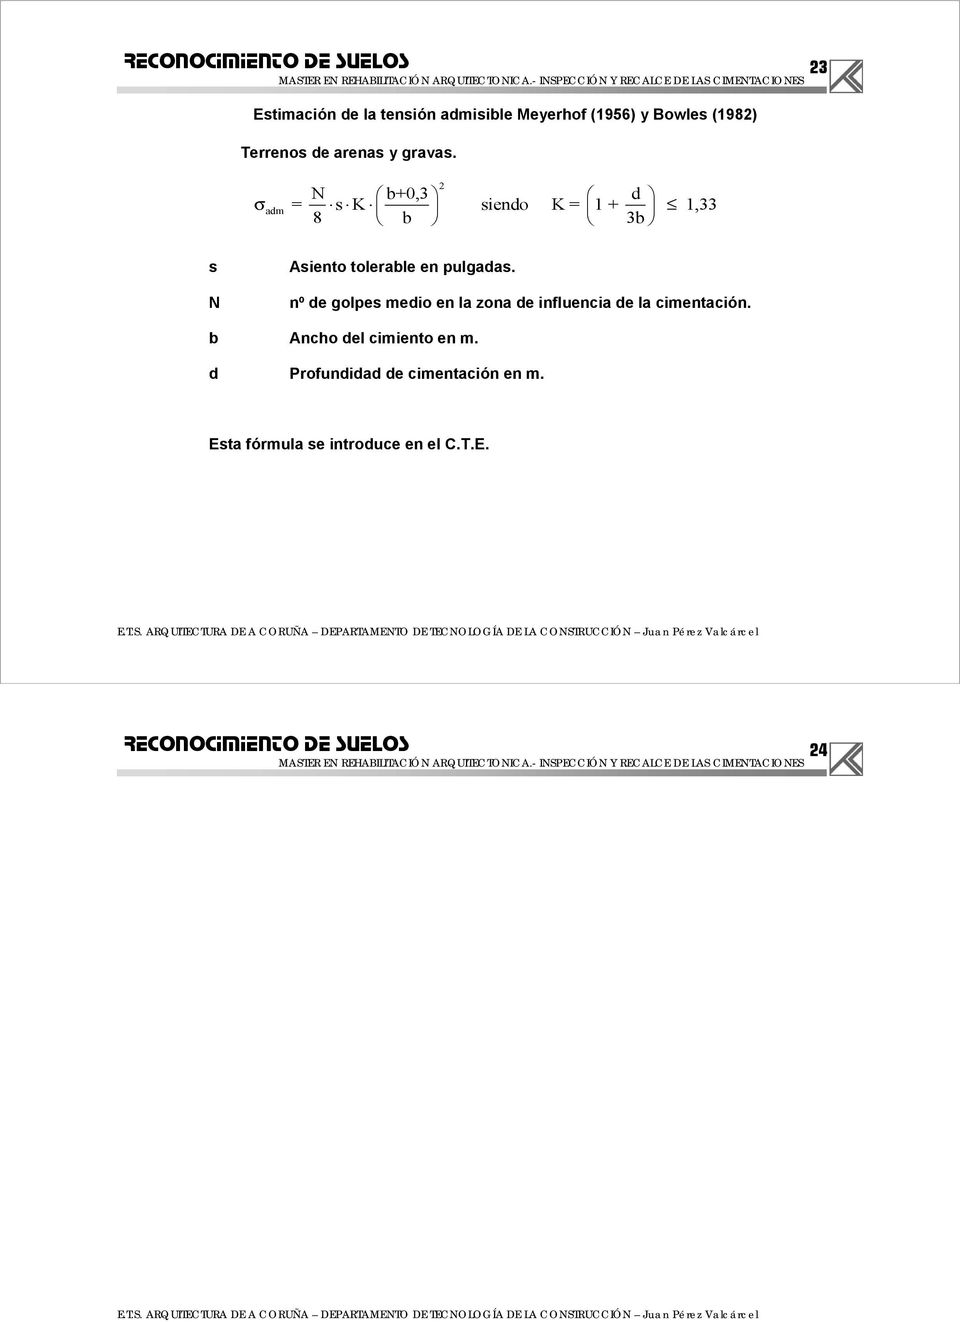 b Ancho del cimiento en m. d Profundidad de cimentación en m. Esta fórmula se introduce en el C.T.